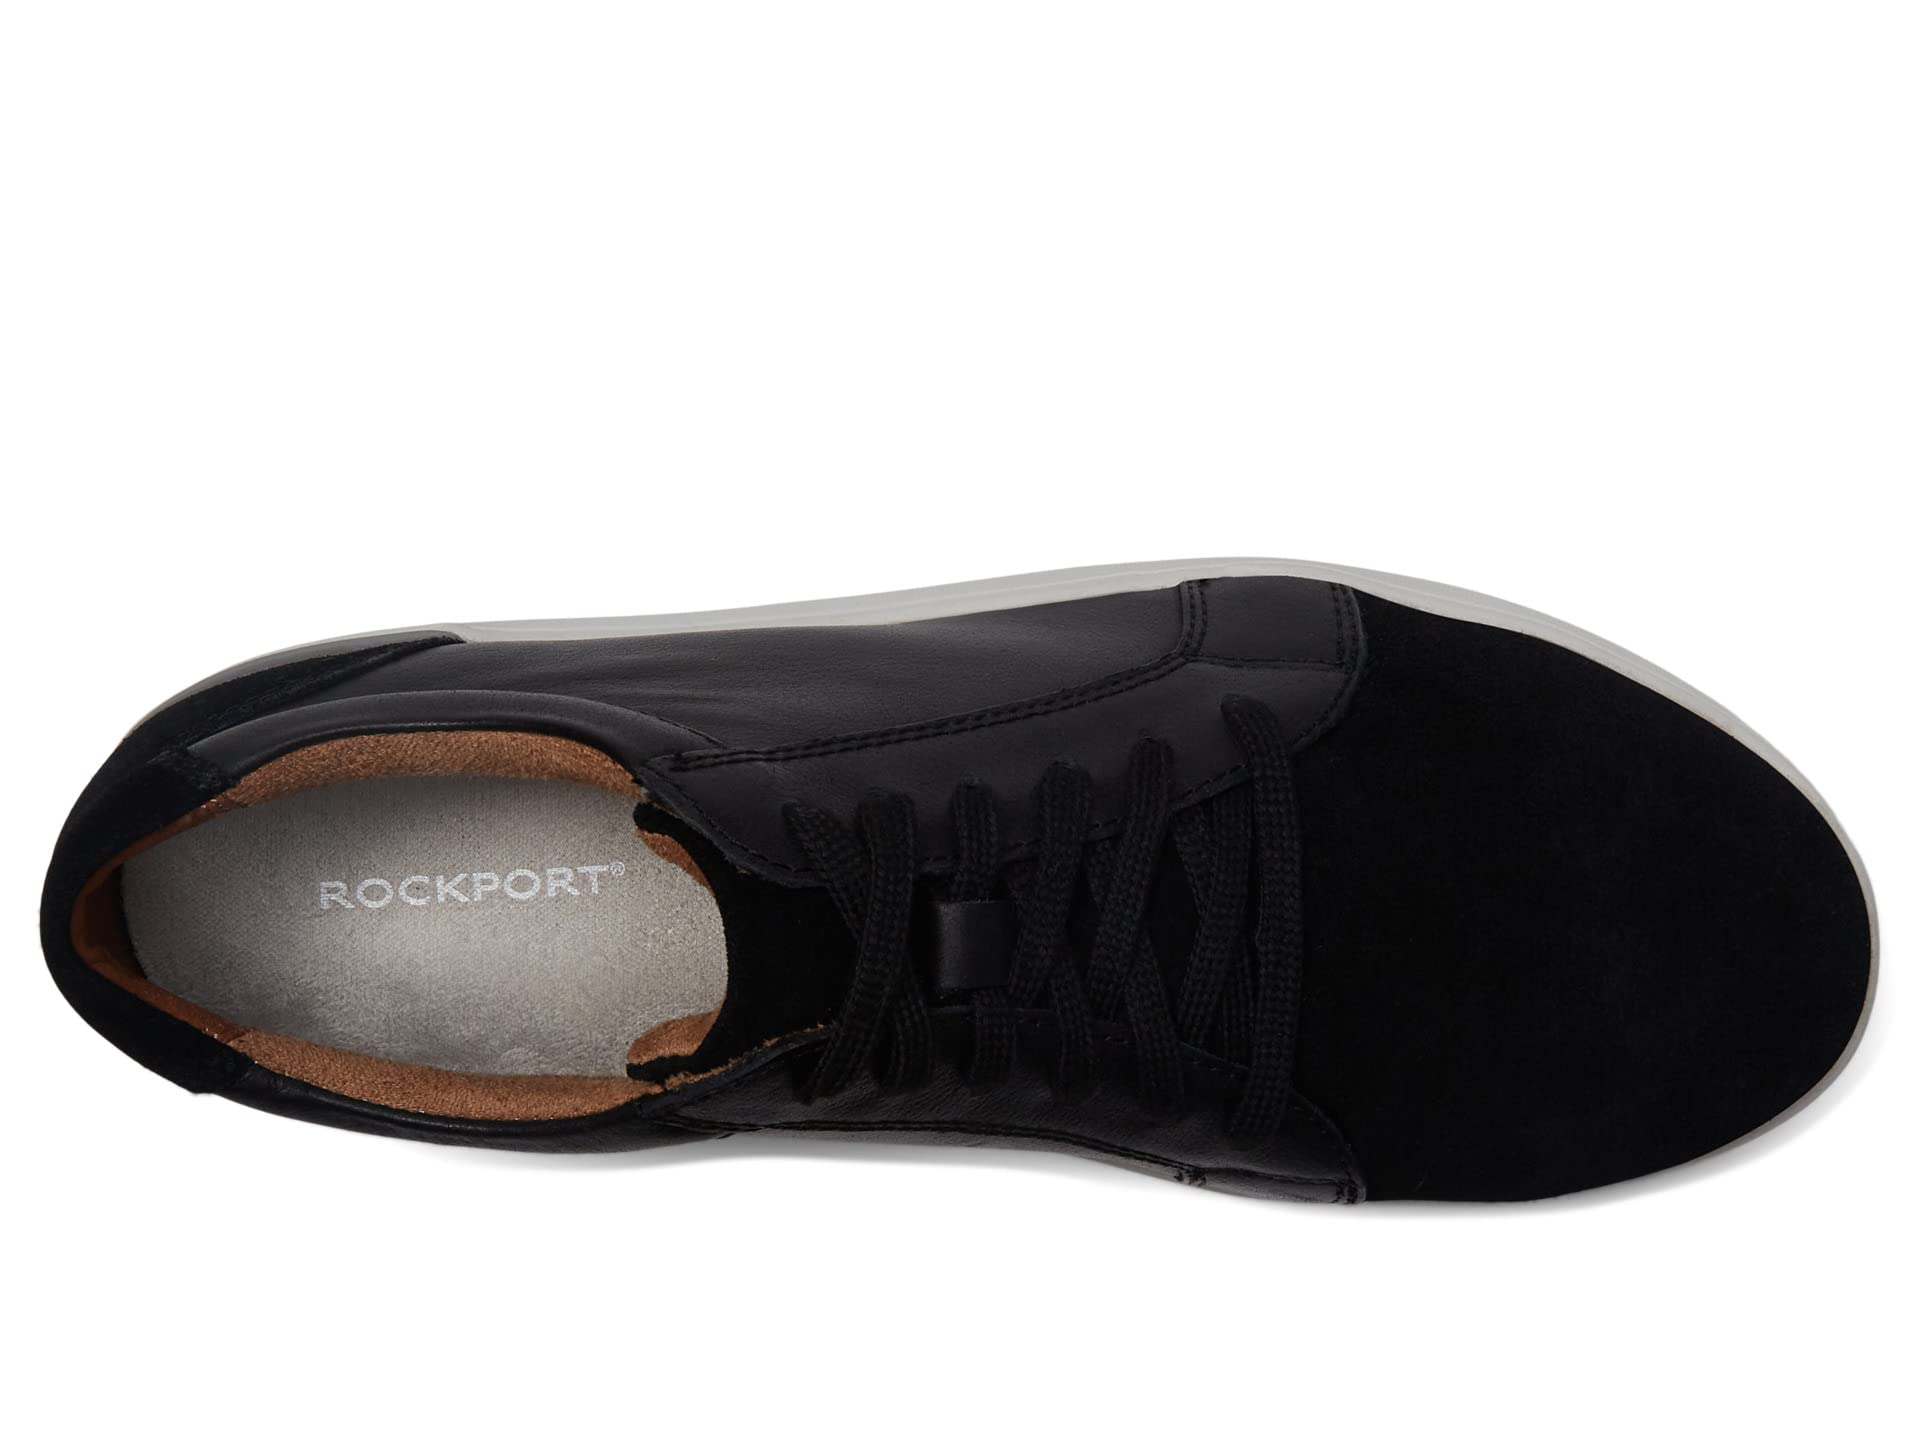 Ботинки Rockport Works Parissa Work SD35 Composite, черный цена и фото